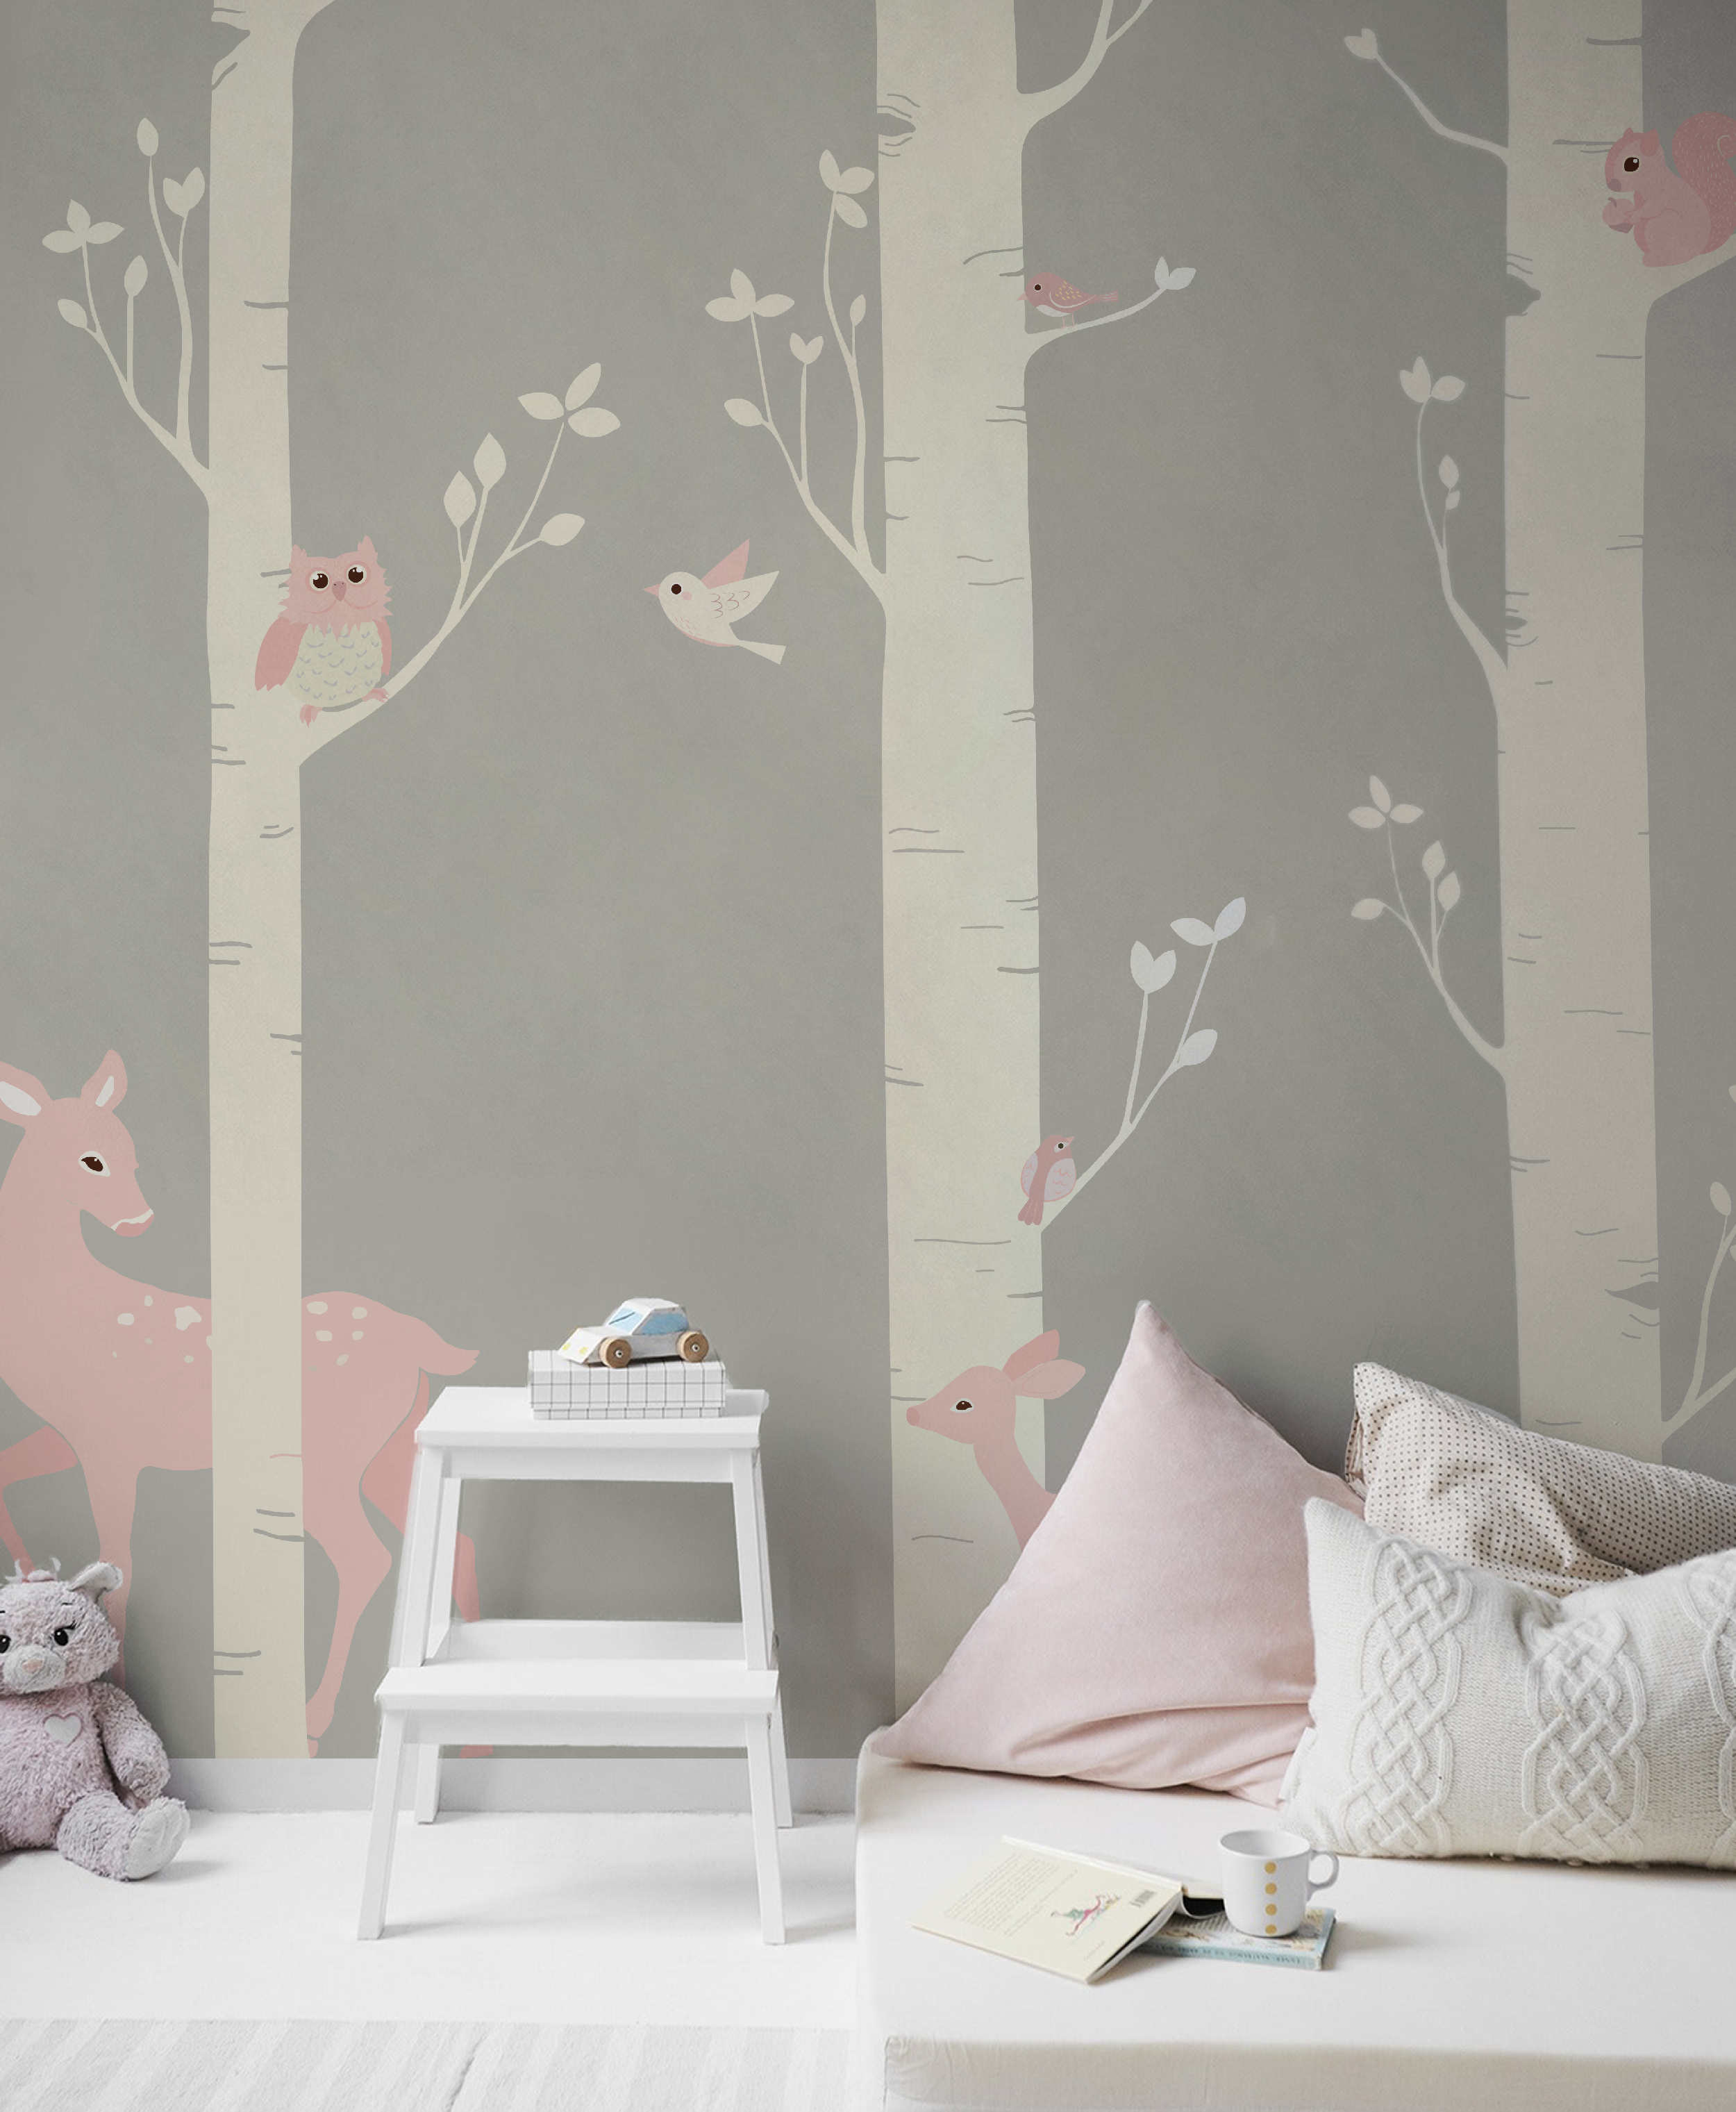 The Forest Of Dreams Pink Veneziano Baby Interior Design Wallpaper Carta Da Parati Per Bambini